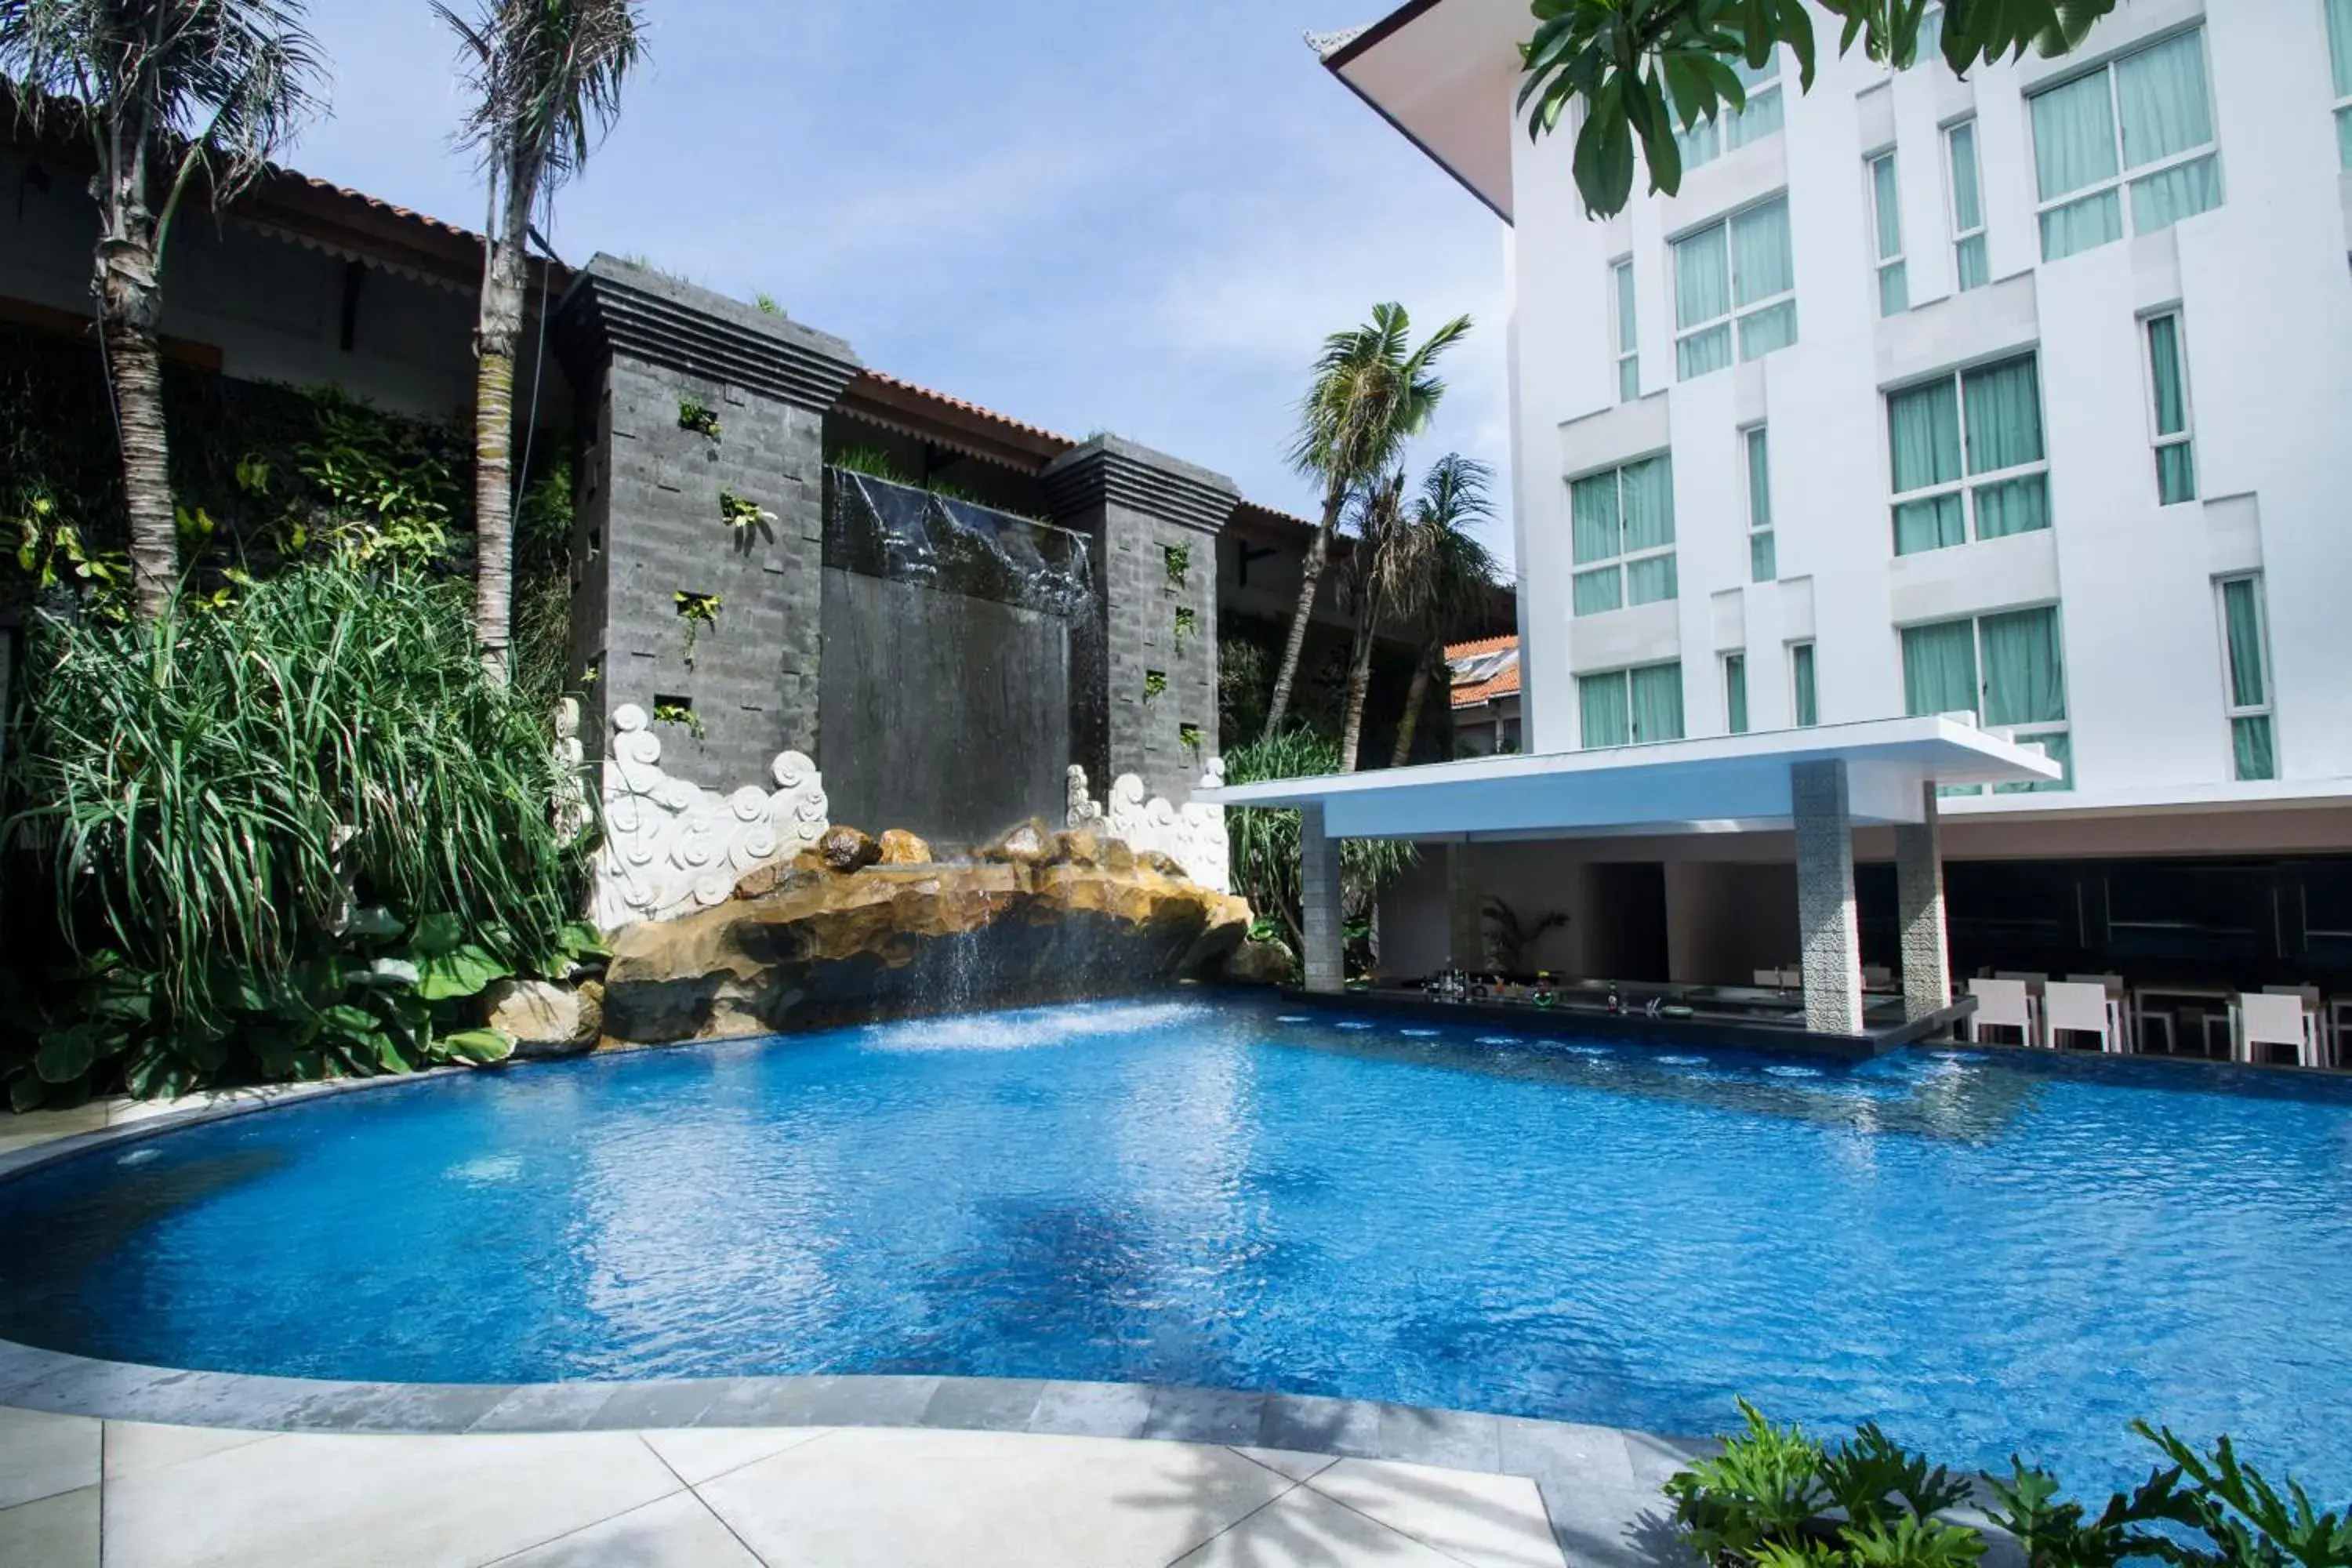 Swimming Pool in Bintang Kuta Hotel